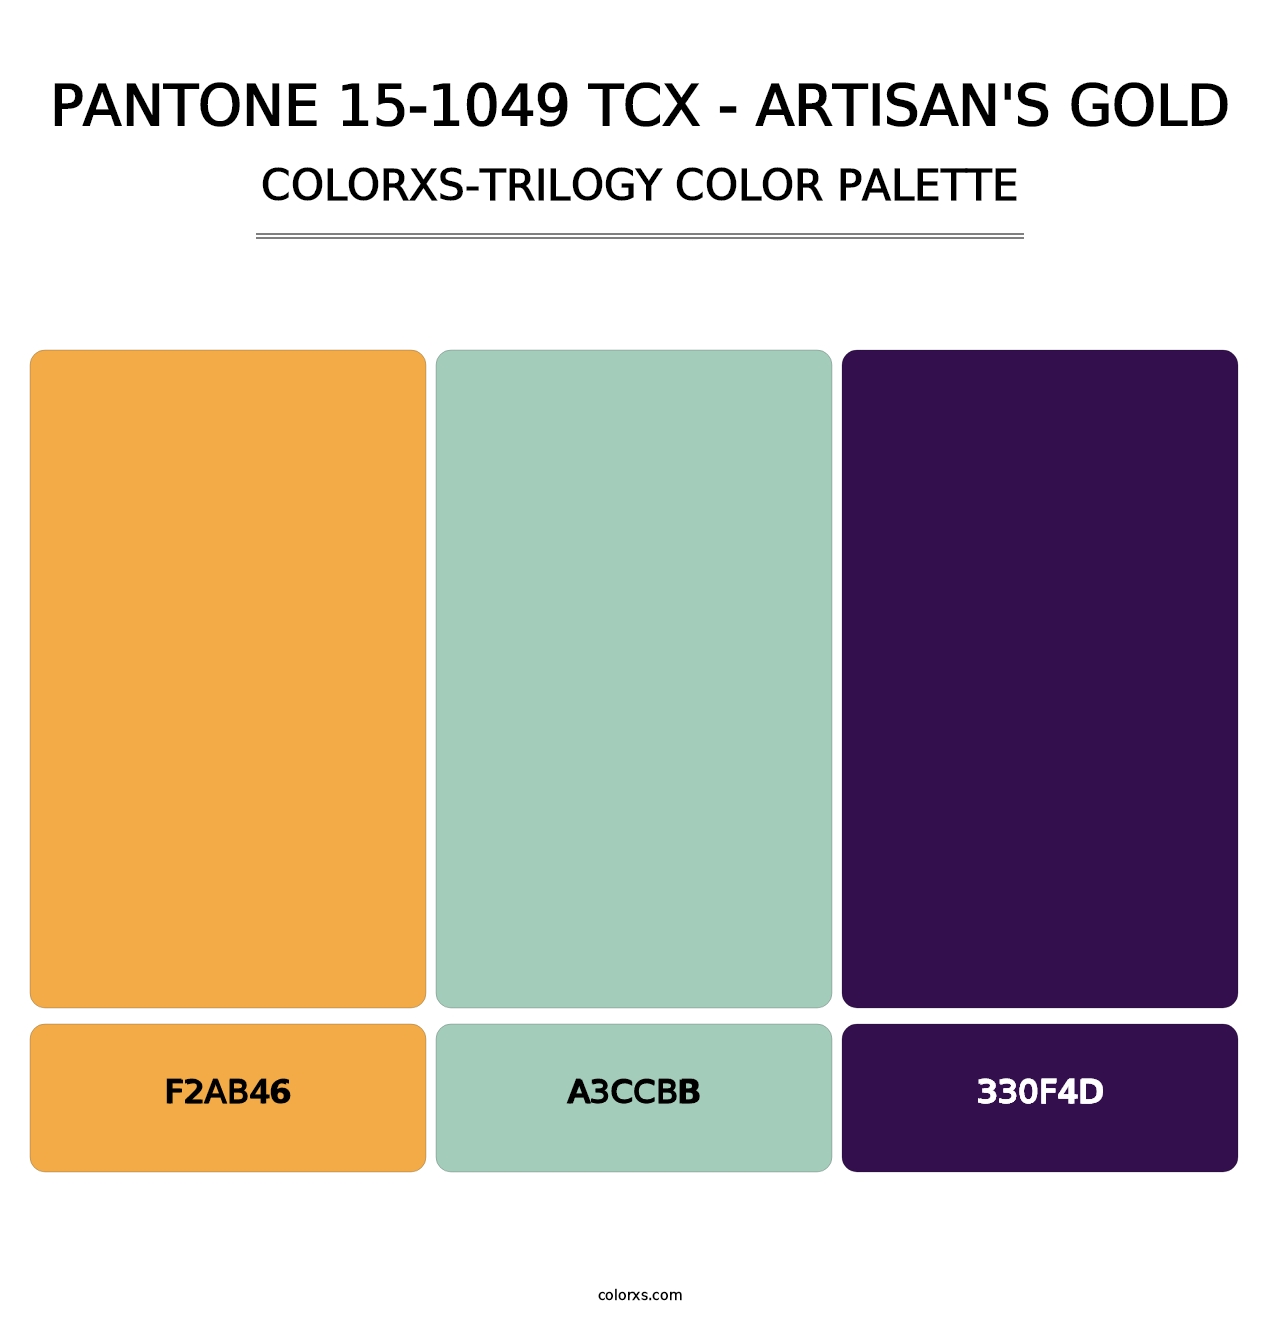 PANTONE 15-1049 TCX - Artisan's Gold - Colorxs Trilogy Palette